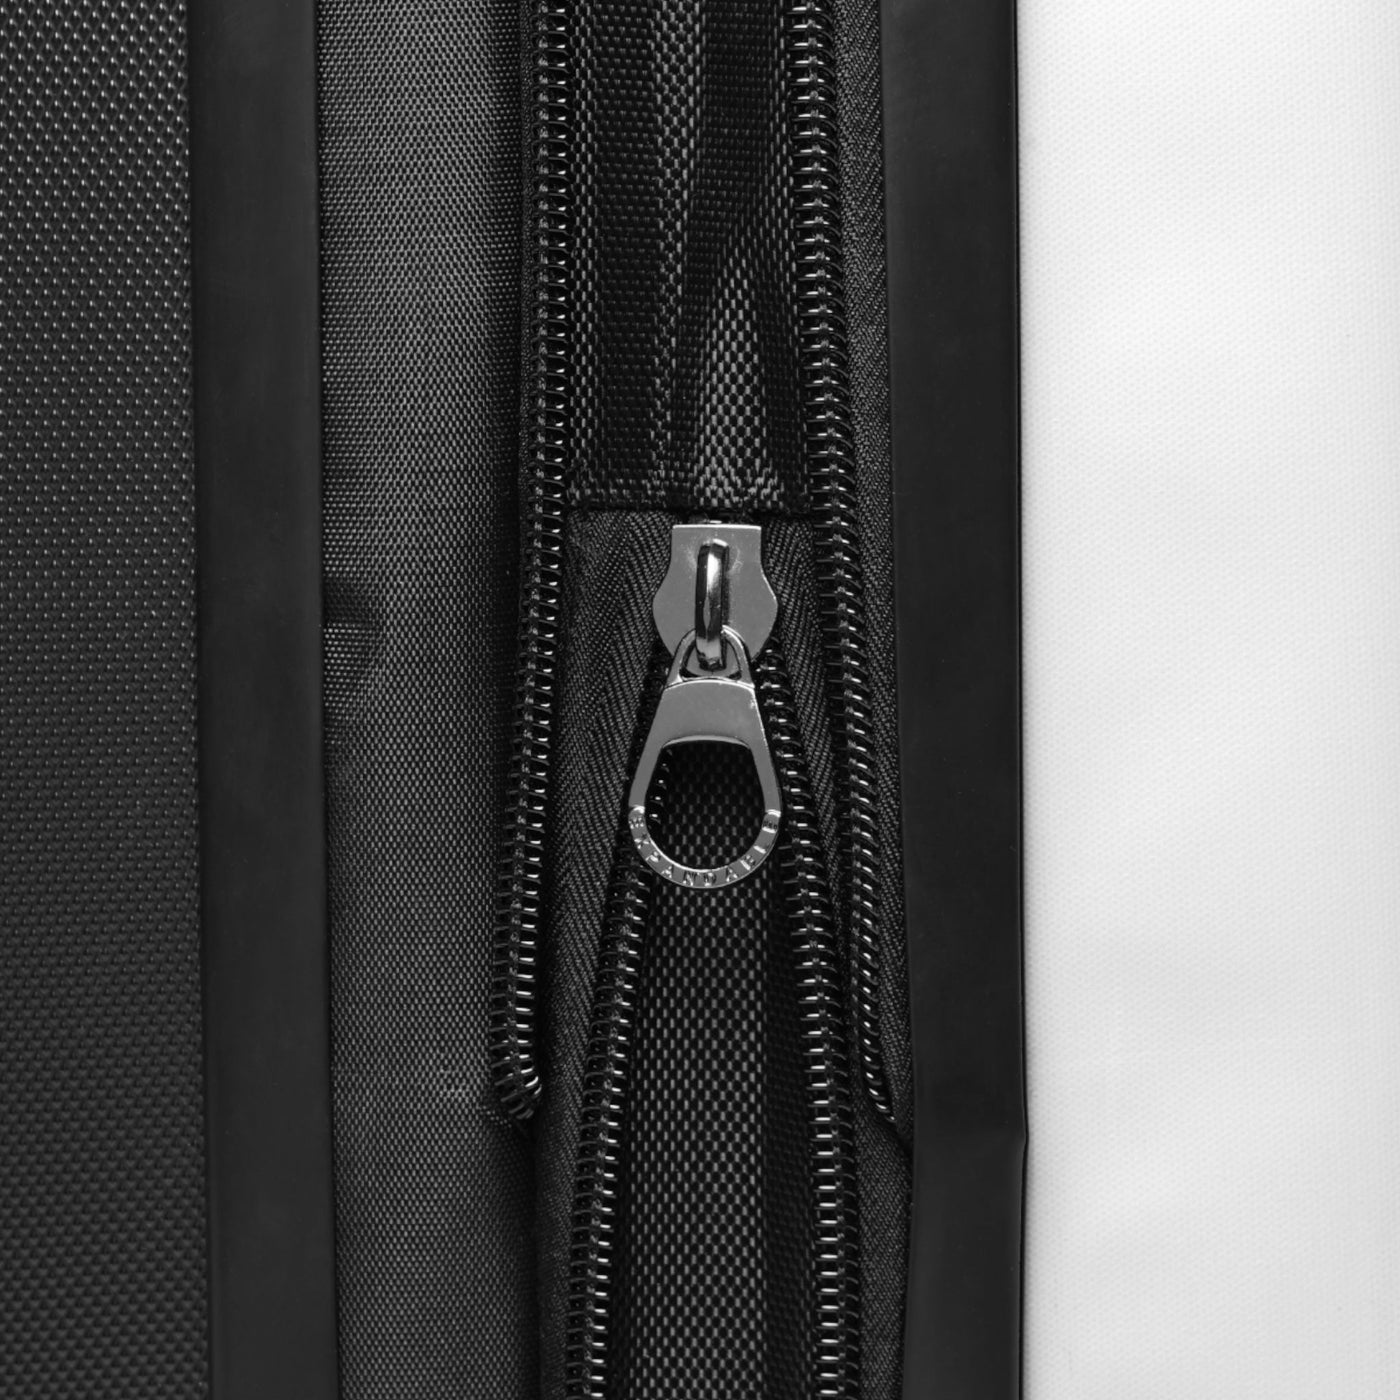 Tyler Durden Black Sugar Suitcase (3 sizes) - Inspired by Fight Club